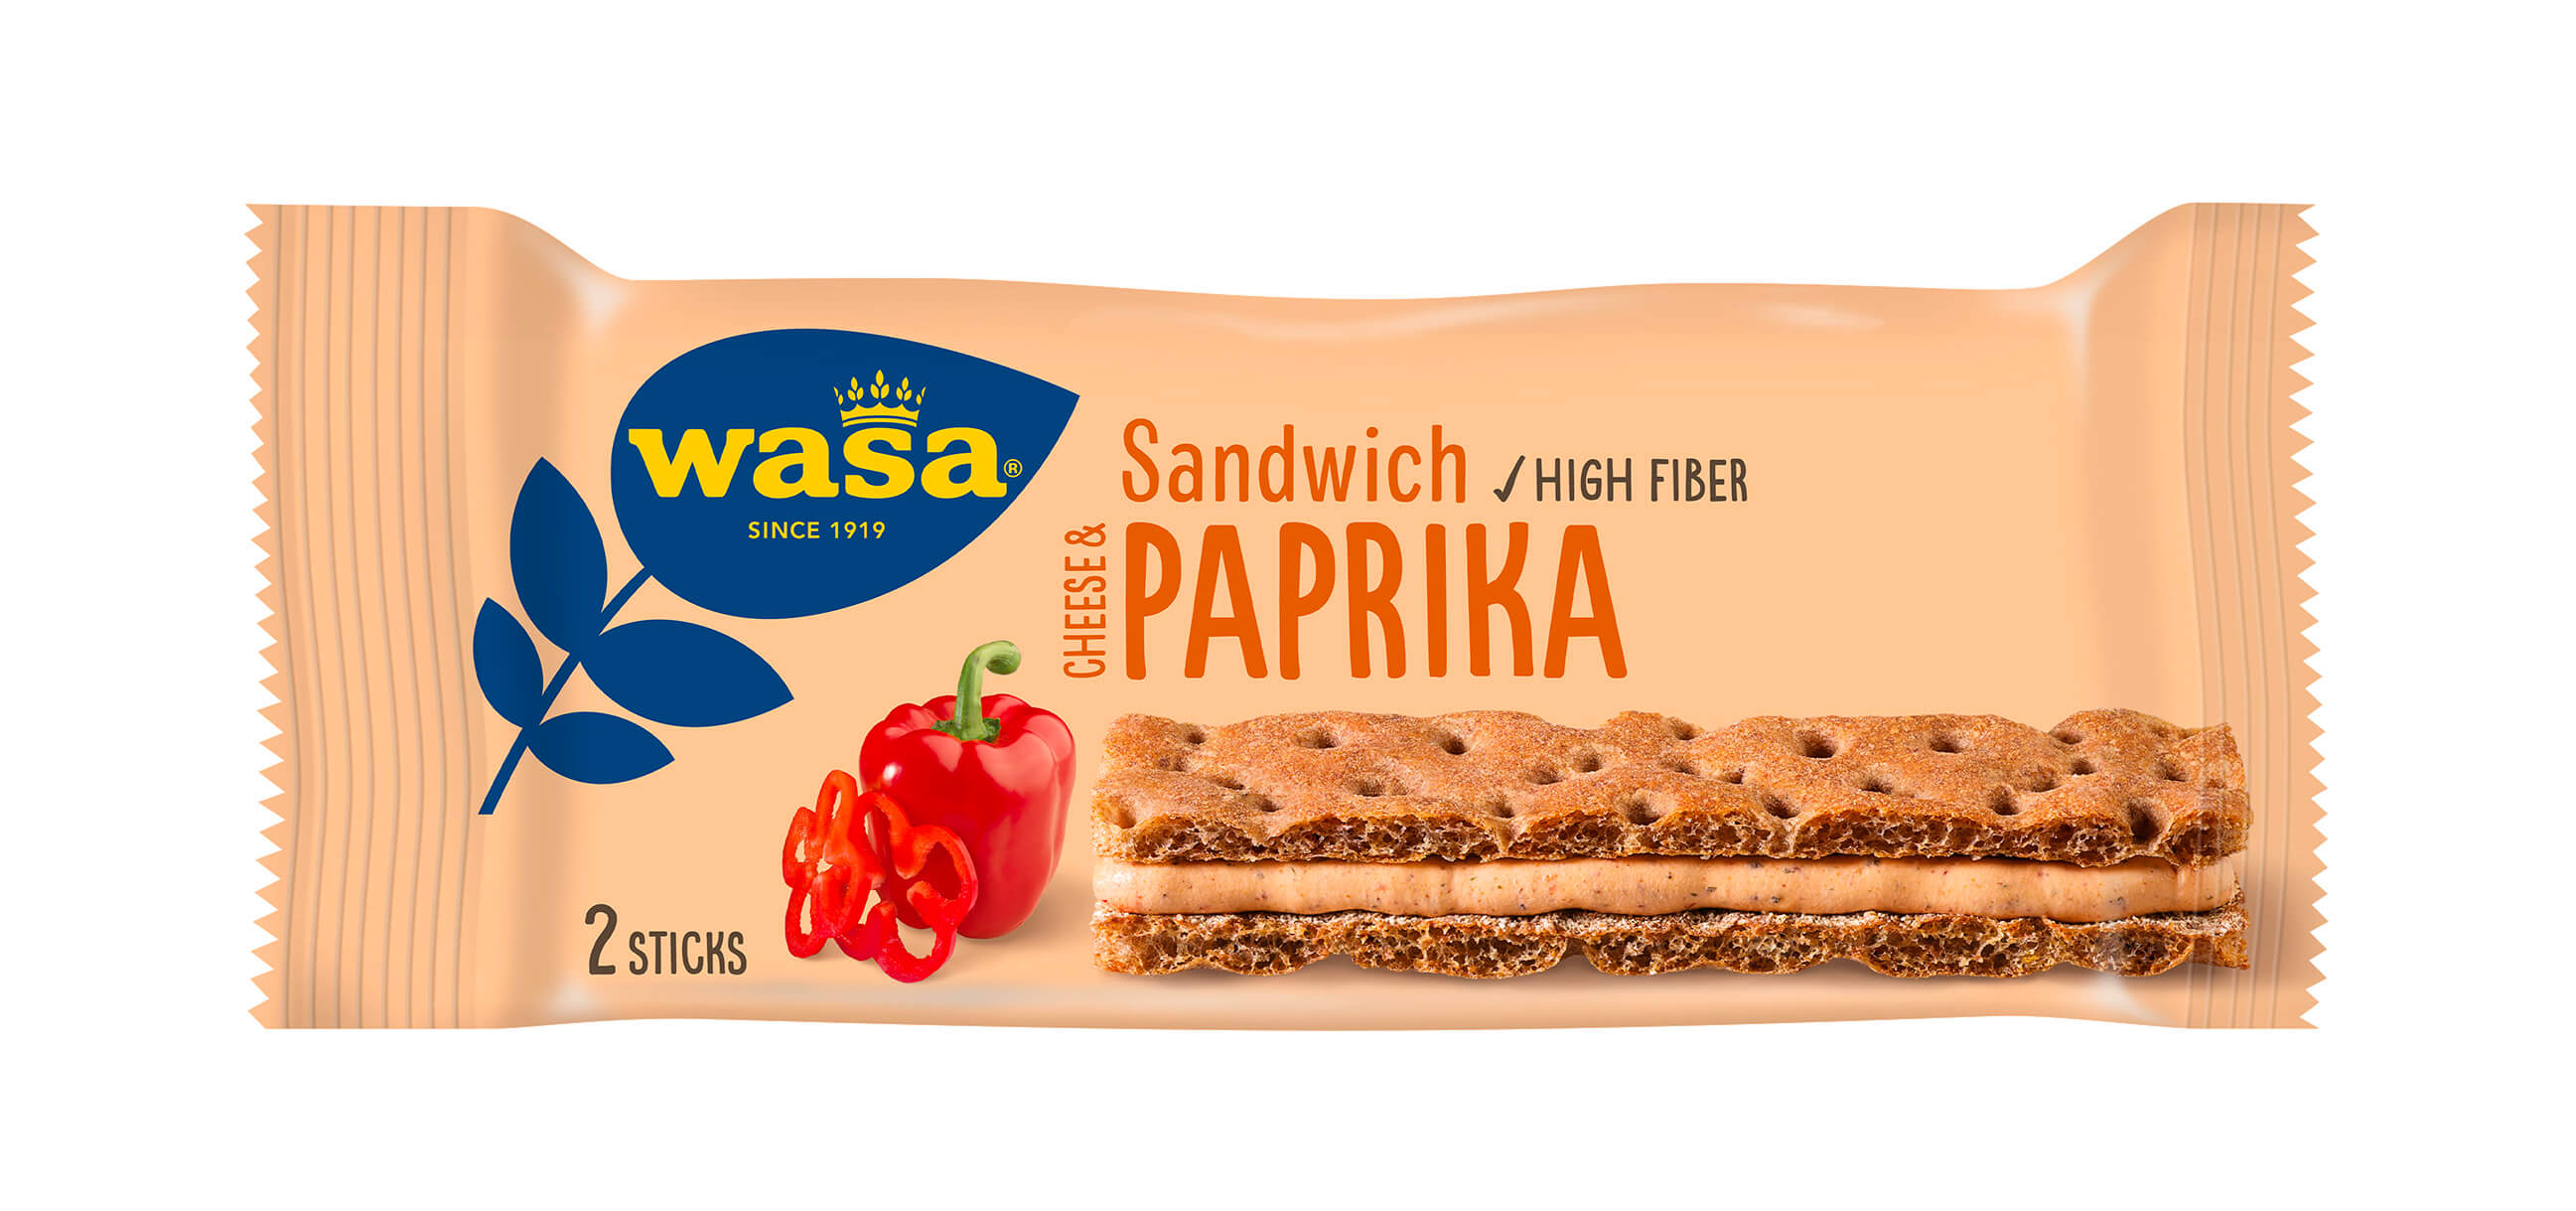 Wasa Sandwich Cheese & Paprika - Upptäck det perfekta mellanmålet, gott knäckebröd med krämig ostfyllning. Utmärkt som ett lätt mellanmål på språng och som tips på mellanmål barn, efter skolan eller innan träning.